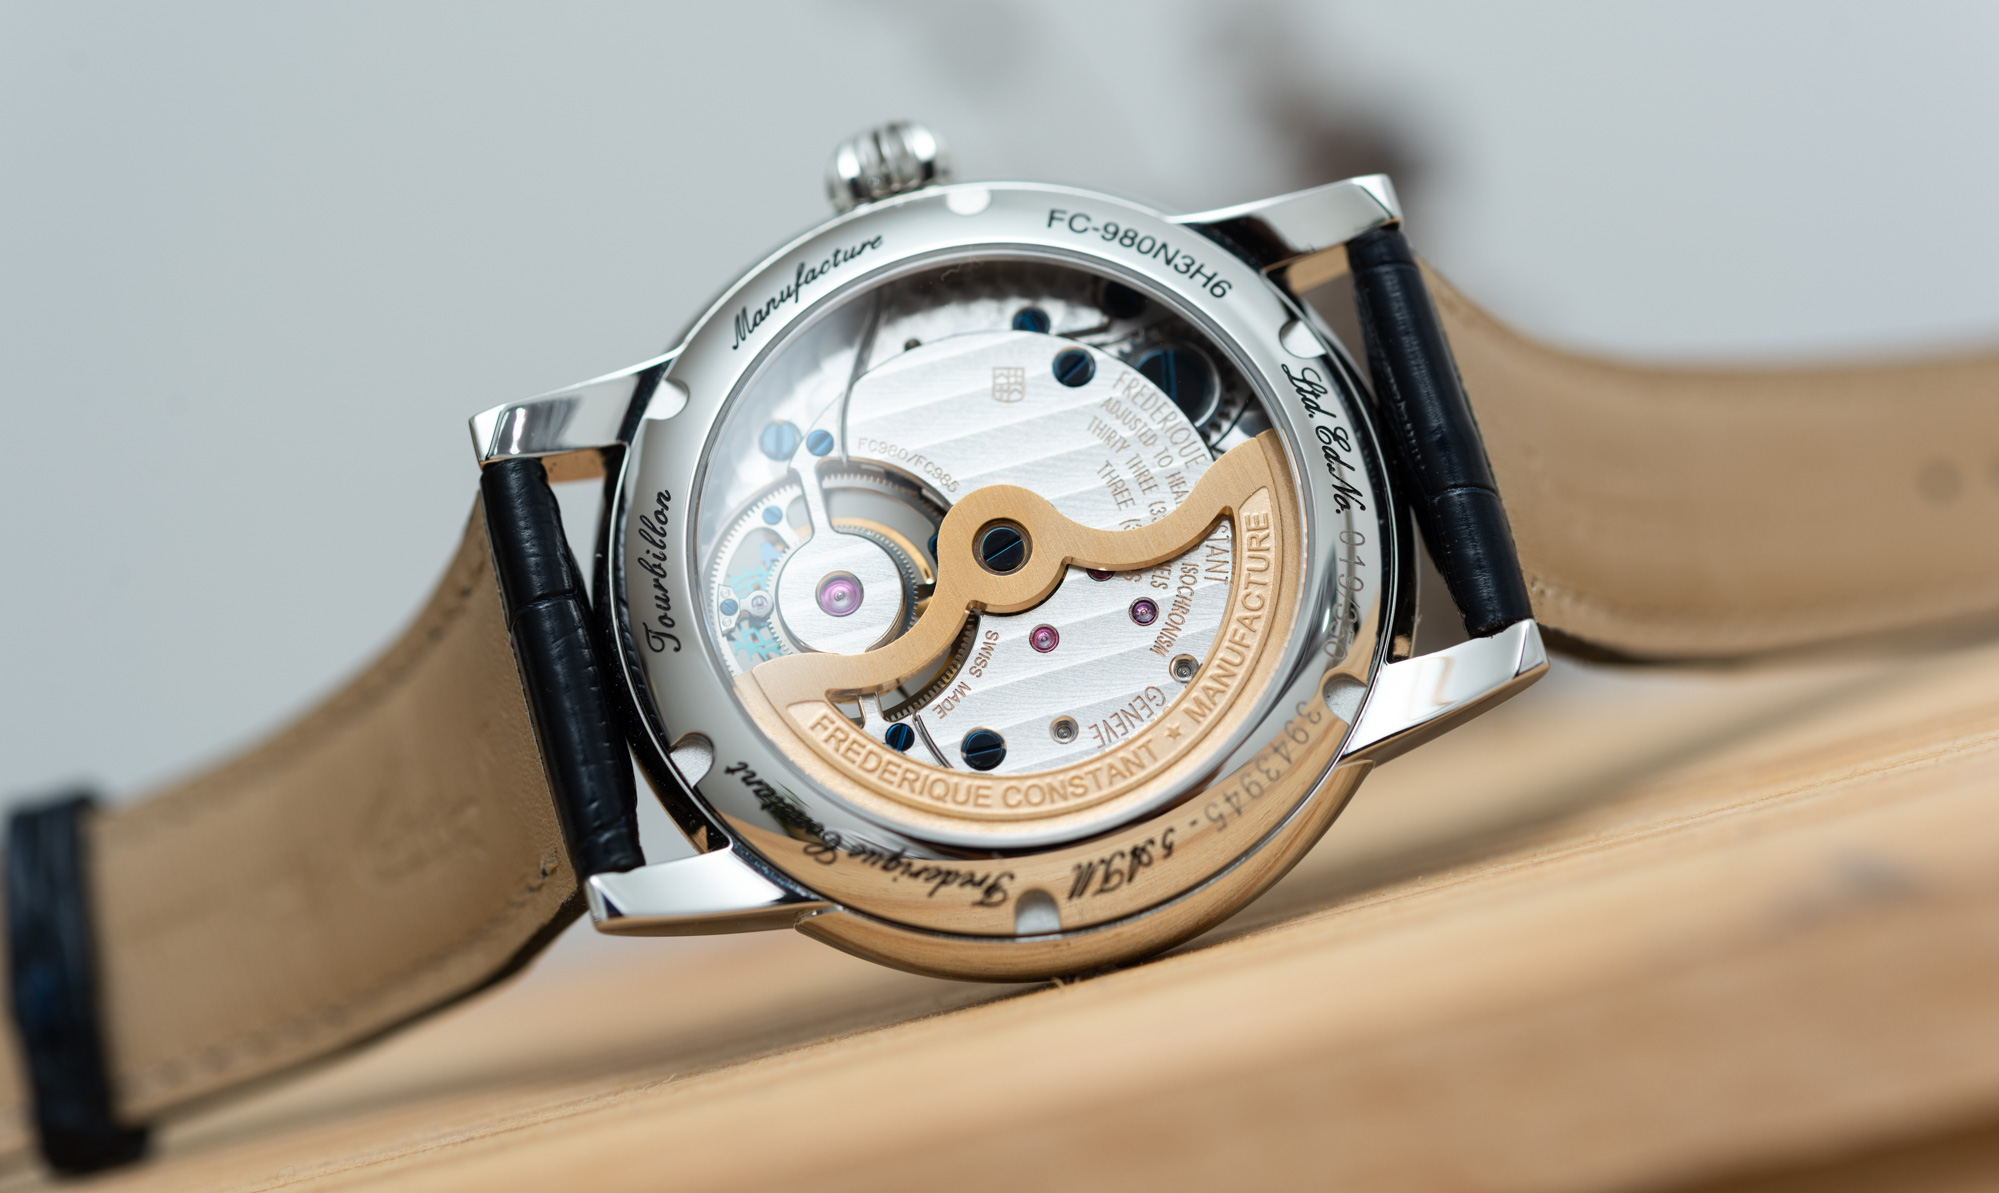 Обзор часов: Юбилейные часы Frederique Constant Manufacture Classic Tourbillon